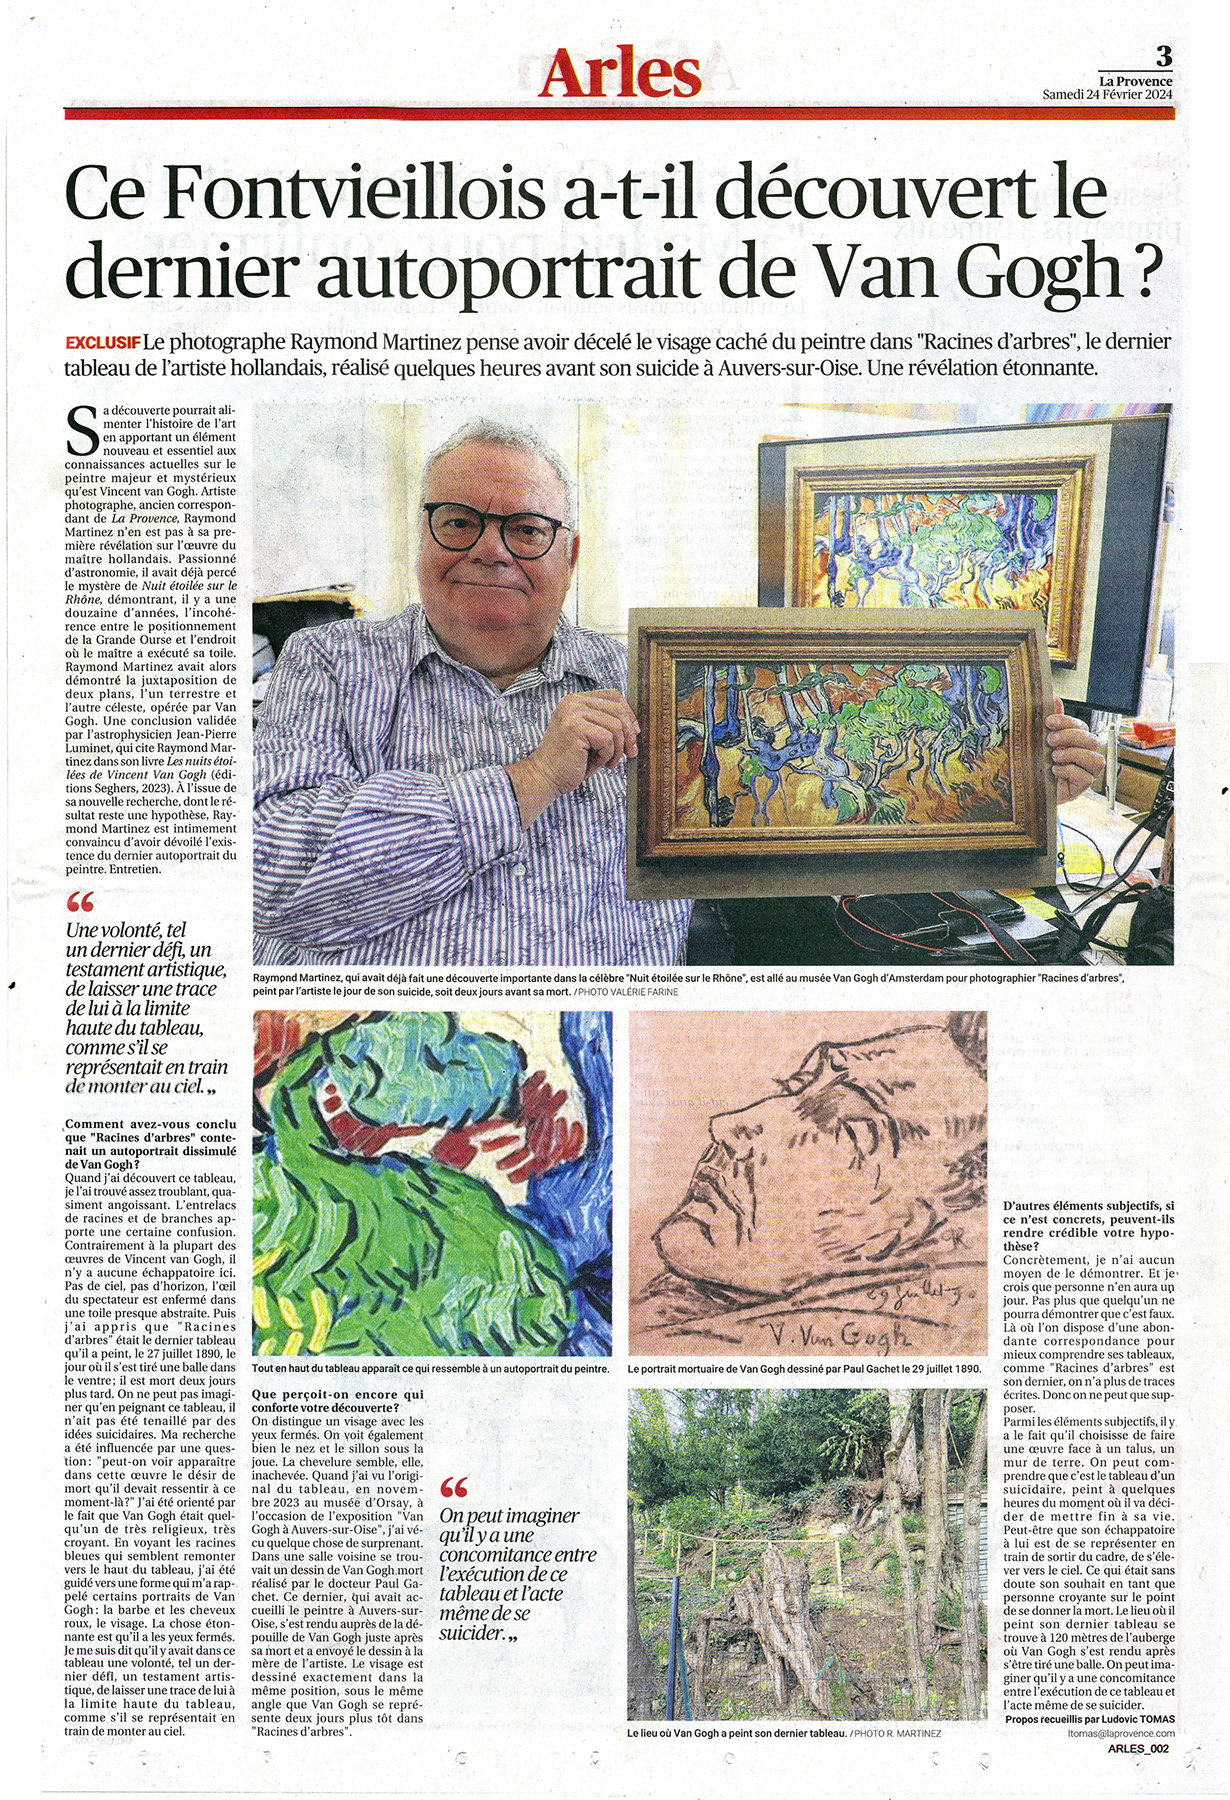 La Provence : Découverte par Raymond Martinez d'un autoportrait dans le dernier tableau de Vincent van Gogh "Racines d'arbres.